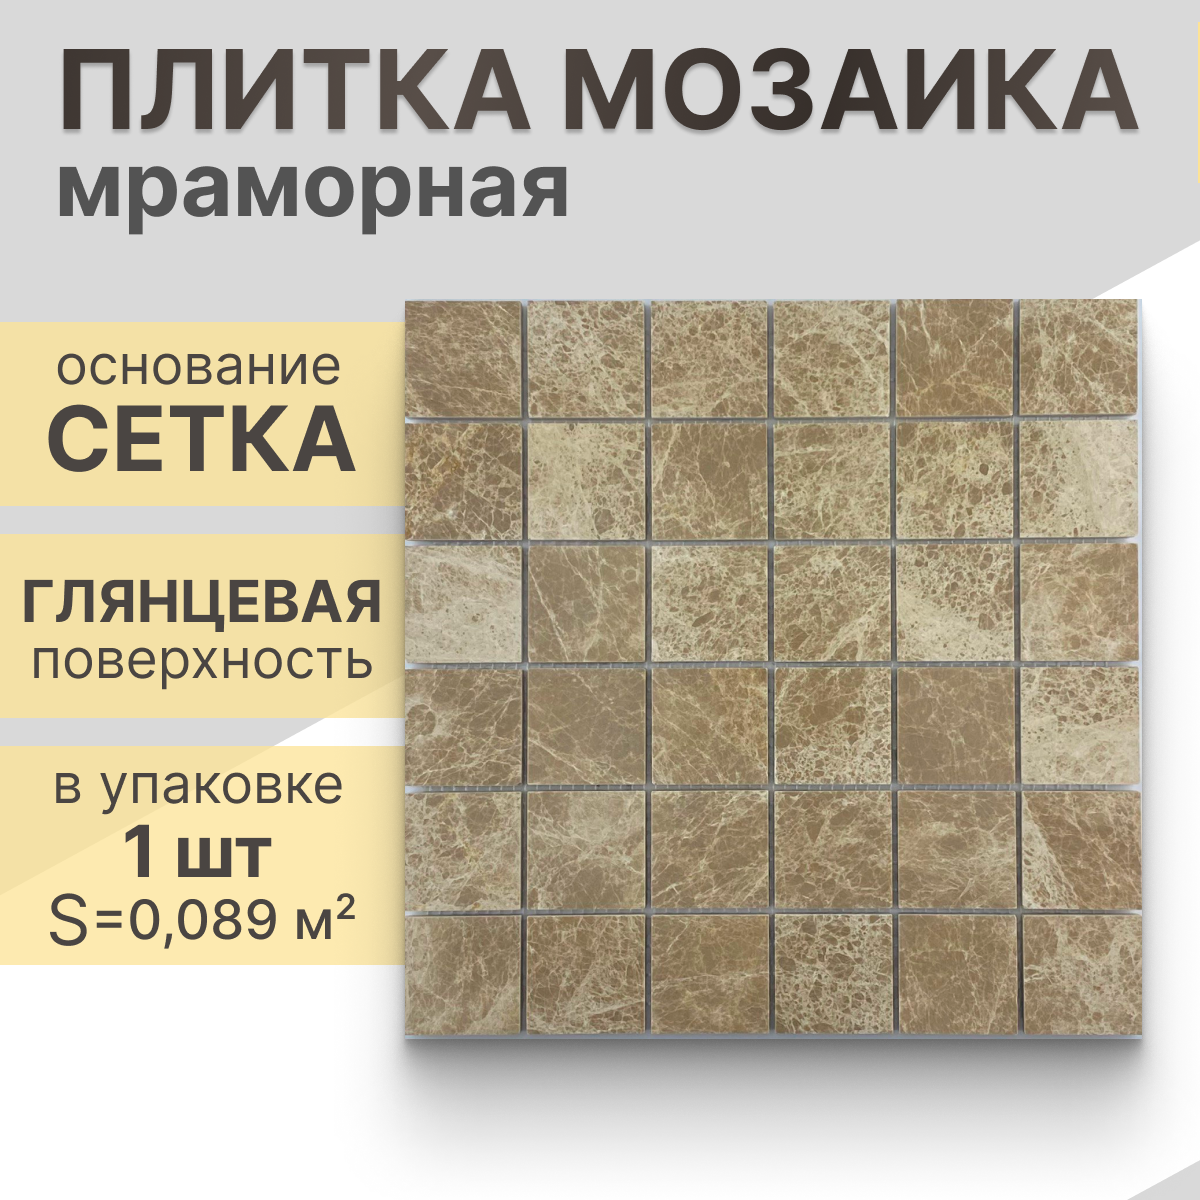 Мозаика (мрамор) NS mosaic Kp-756 29.8X29,8 см 1 шт (0,089 м²)